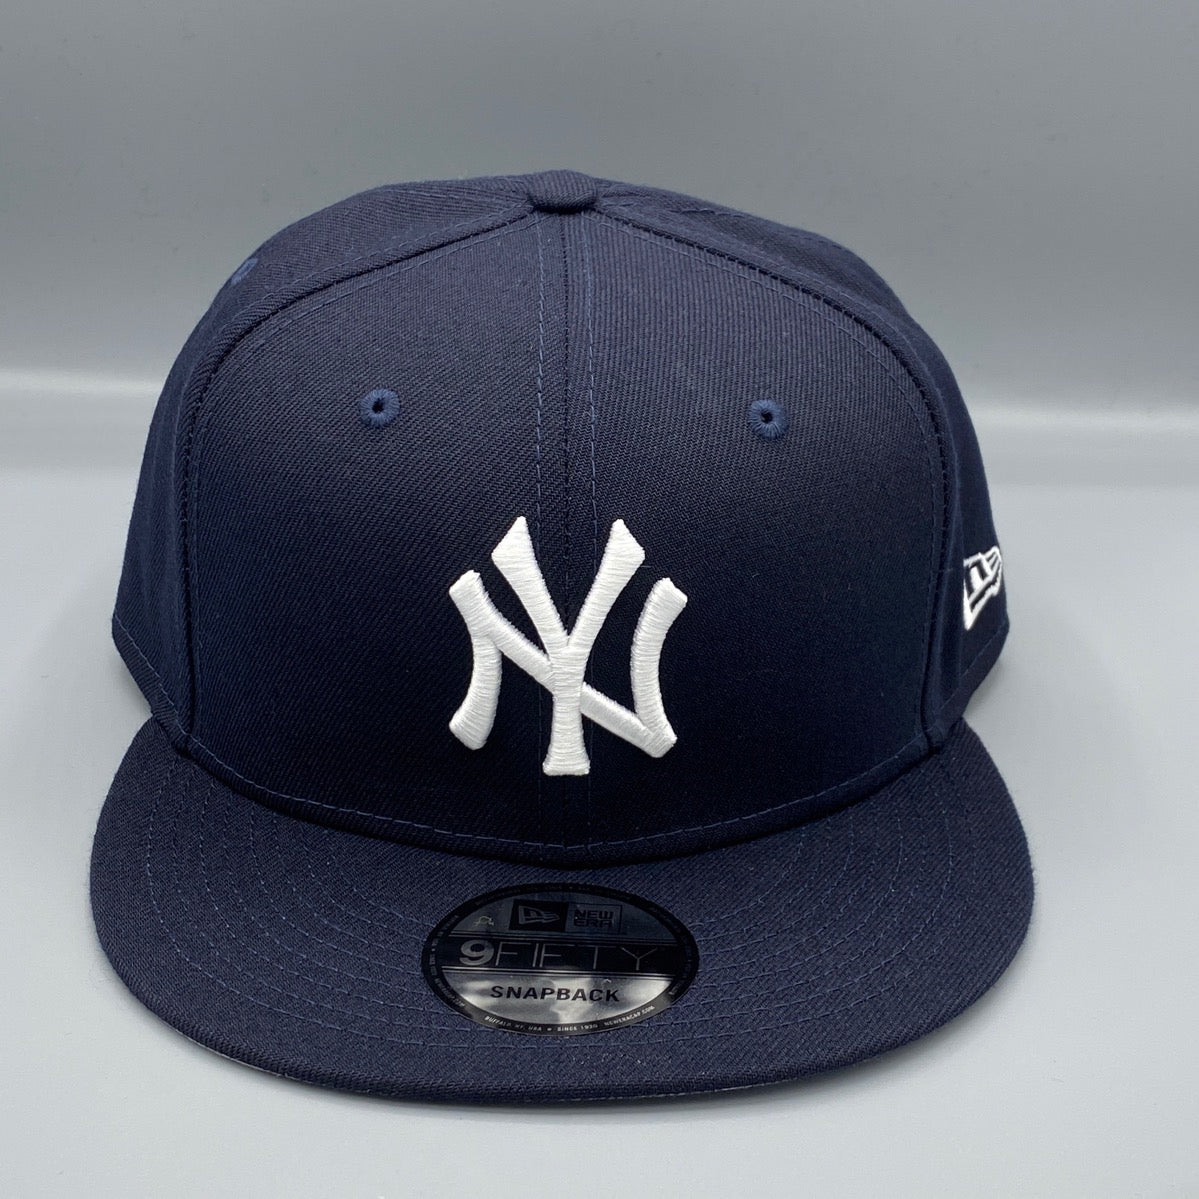 NY Yankees New Era 940 Kids Navy Blue Baseball Cap